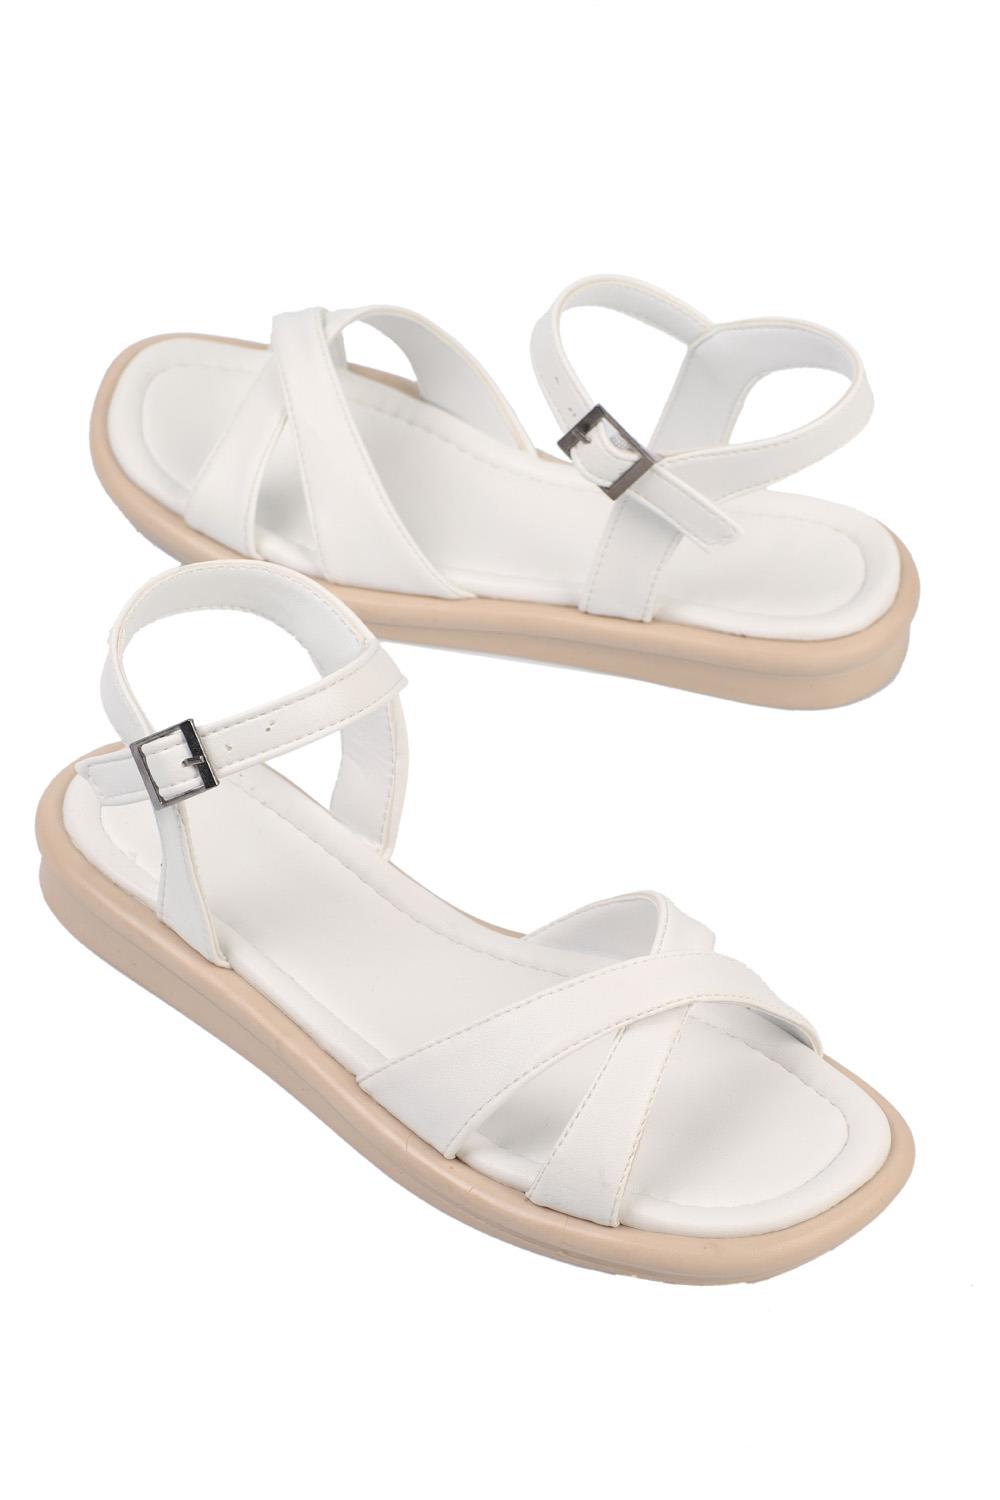 Flat N Heels Women's White Cross Strap Sandals